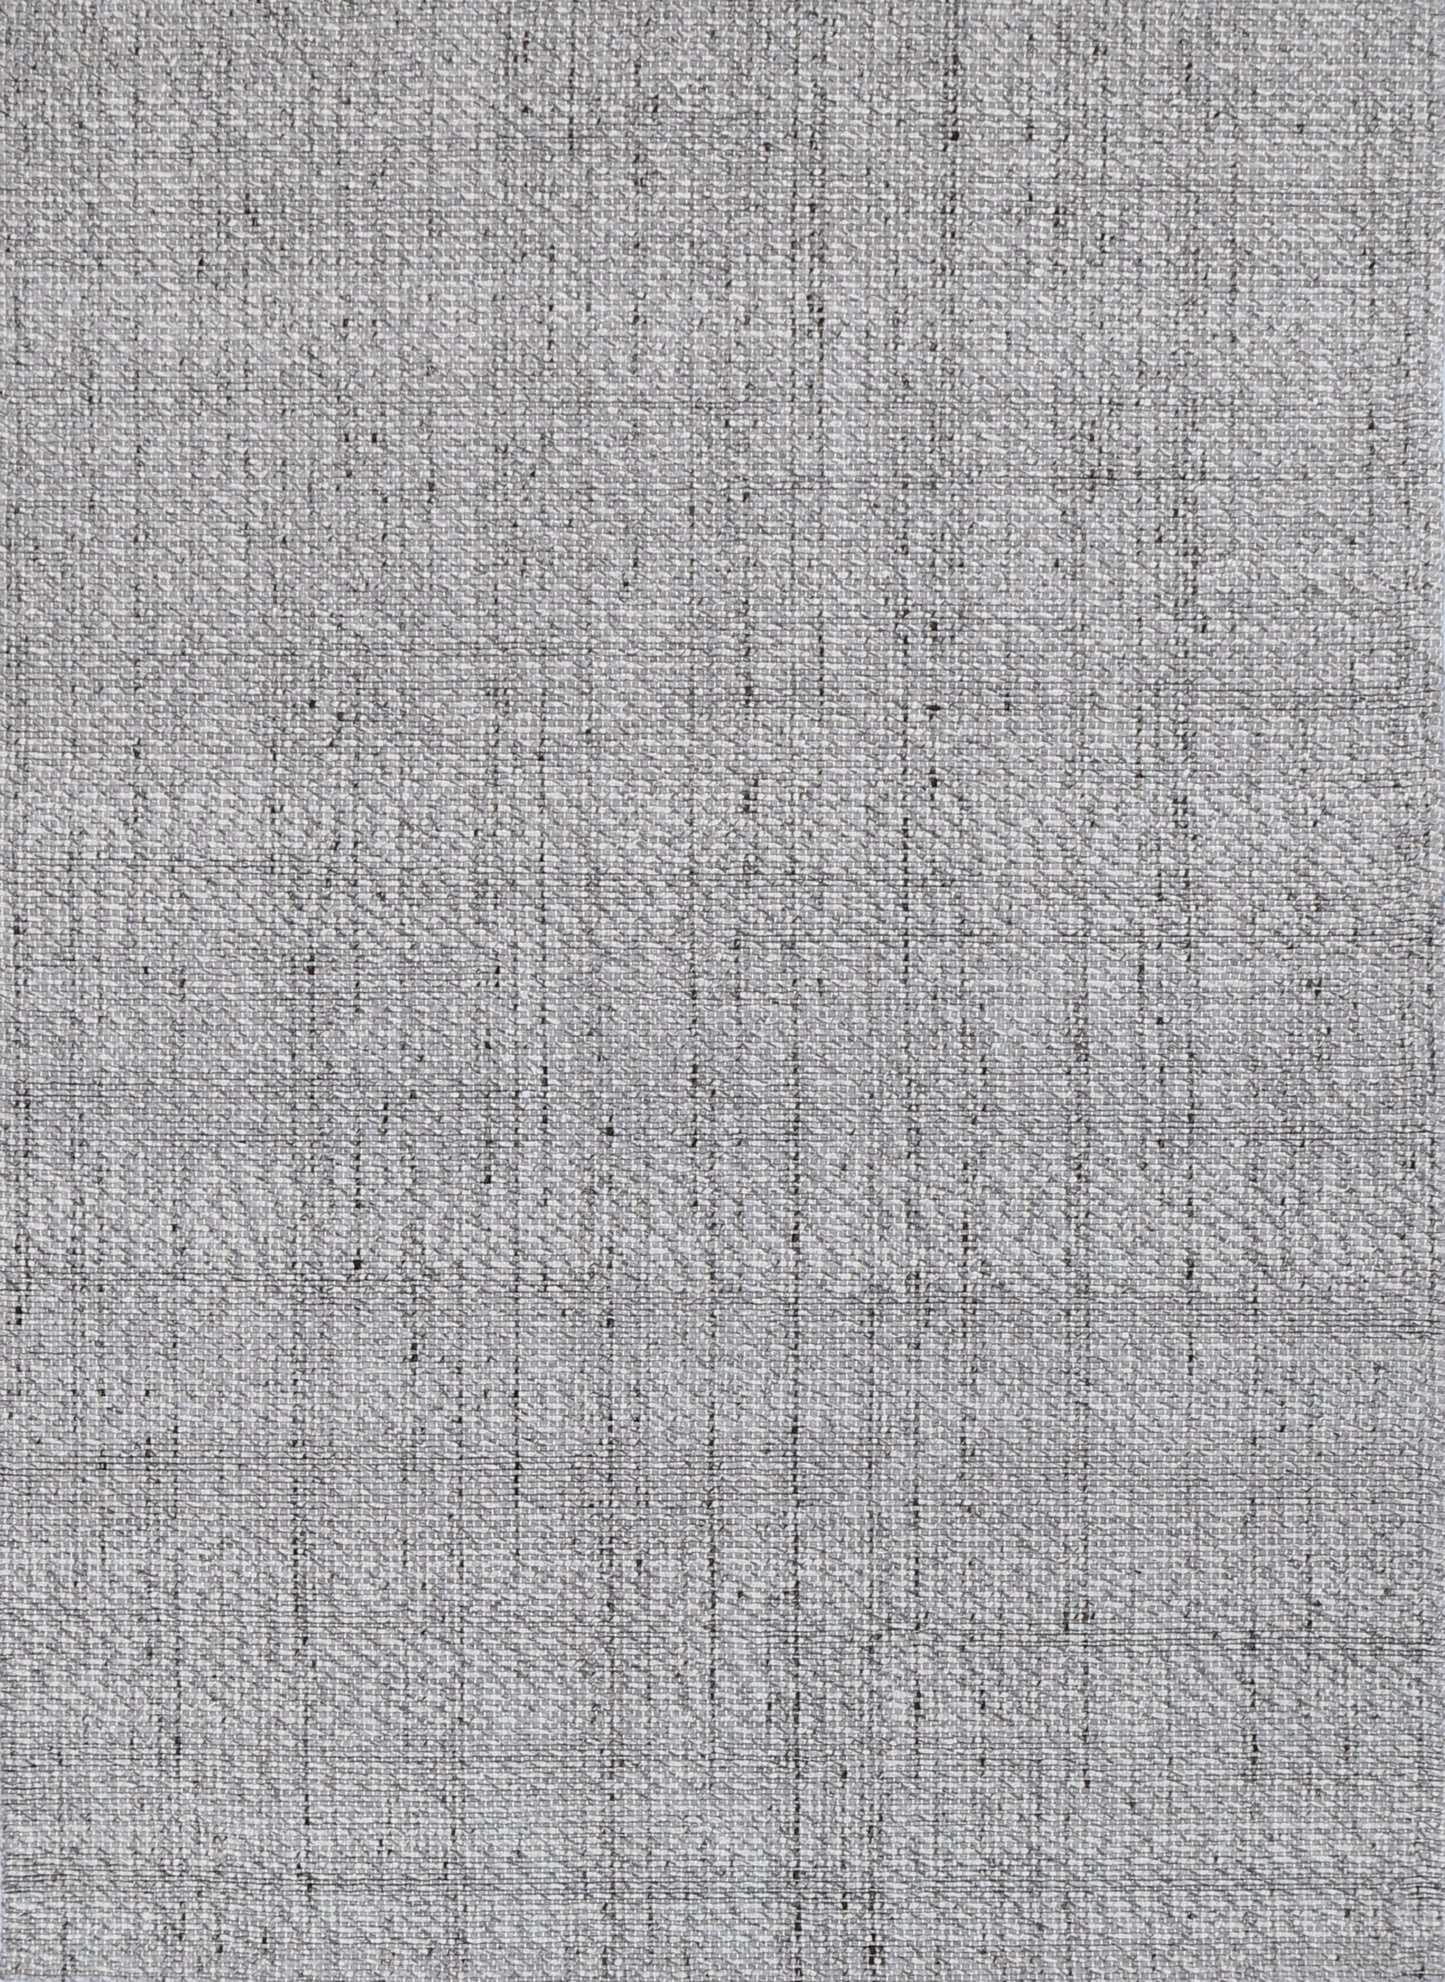 Ridges in Grey Wool Rug